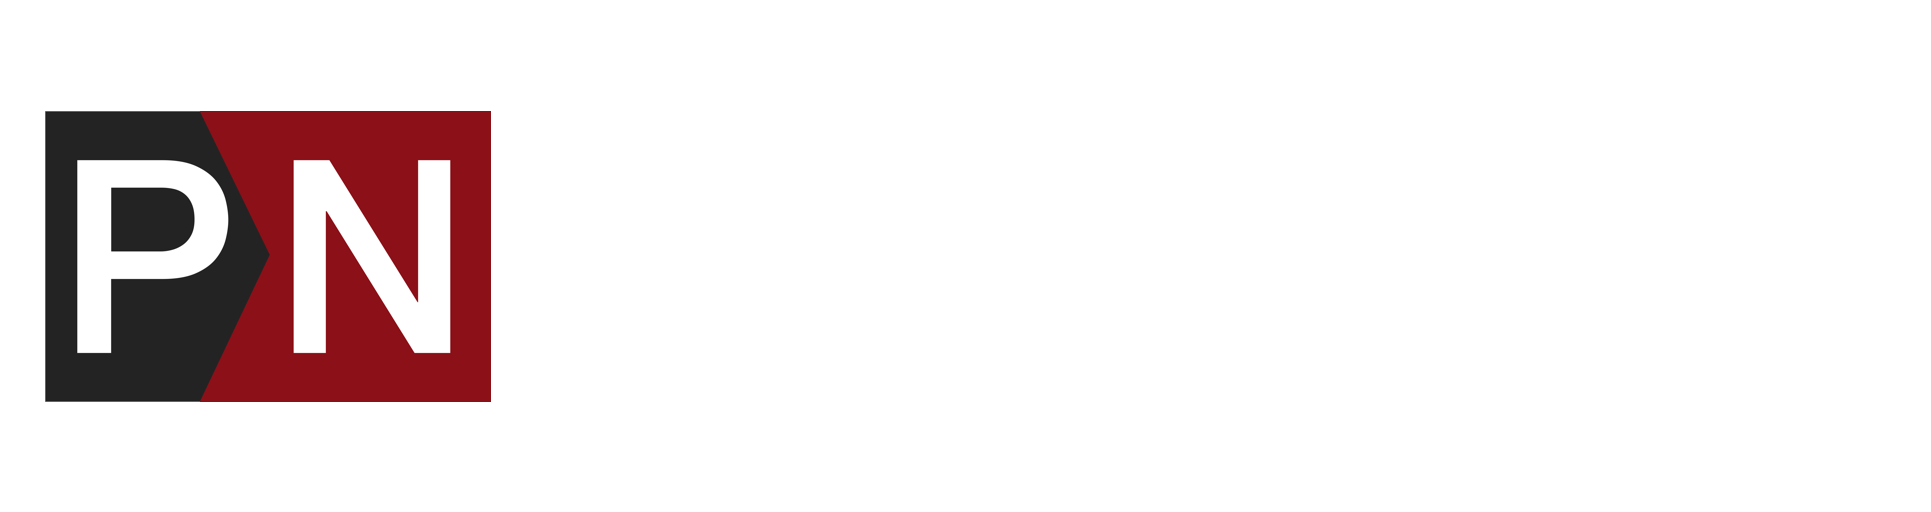 Pinch News